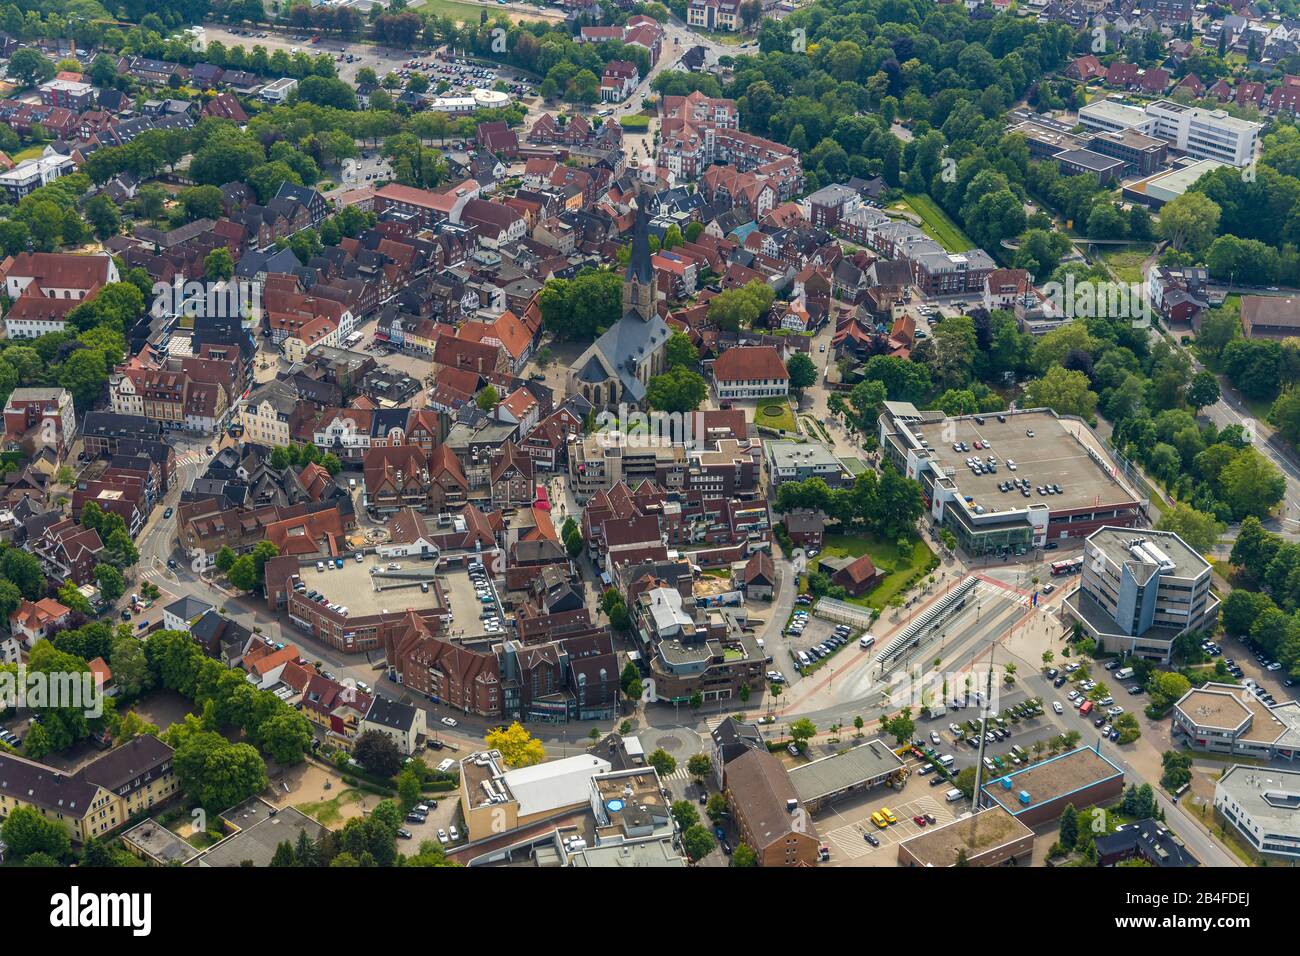 Luftbild zur Innenstadt Werne mit St. Christophorus-Kirche, Marktplatz und historischem Rathaus in Werne, Ruhrgebiet, Nordrhein-Westfalen, Deutschland Stockfoto